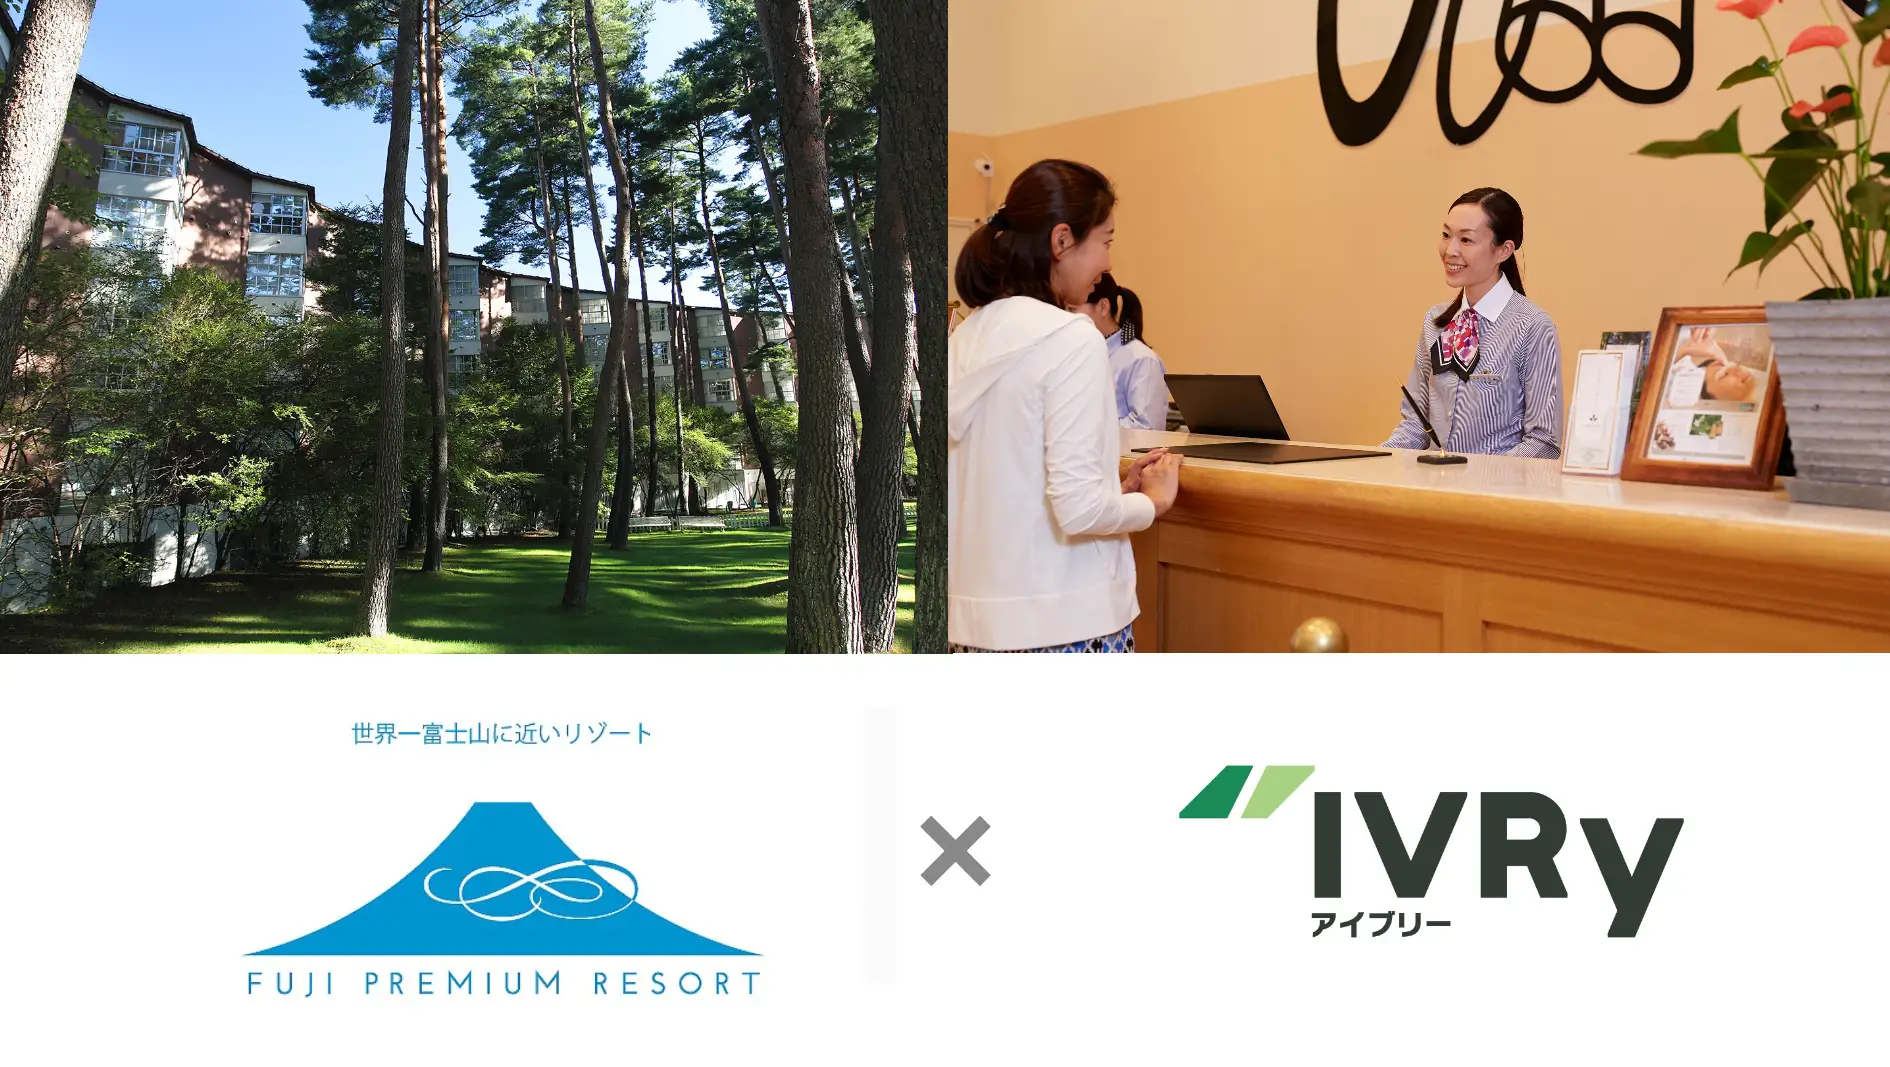 ホテル「フジプレミアムリゾート」、新型コロナ、5類移行後の客足回復、訪日外国人対応に向けて電話自動応答サービス「IVRy（アイブリー）」を導入